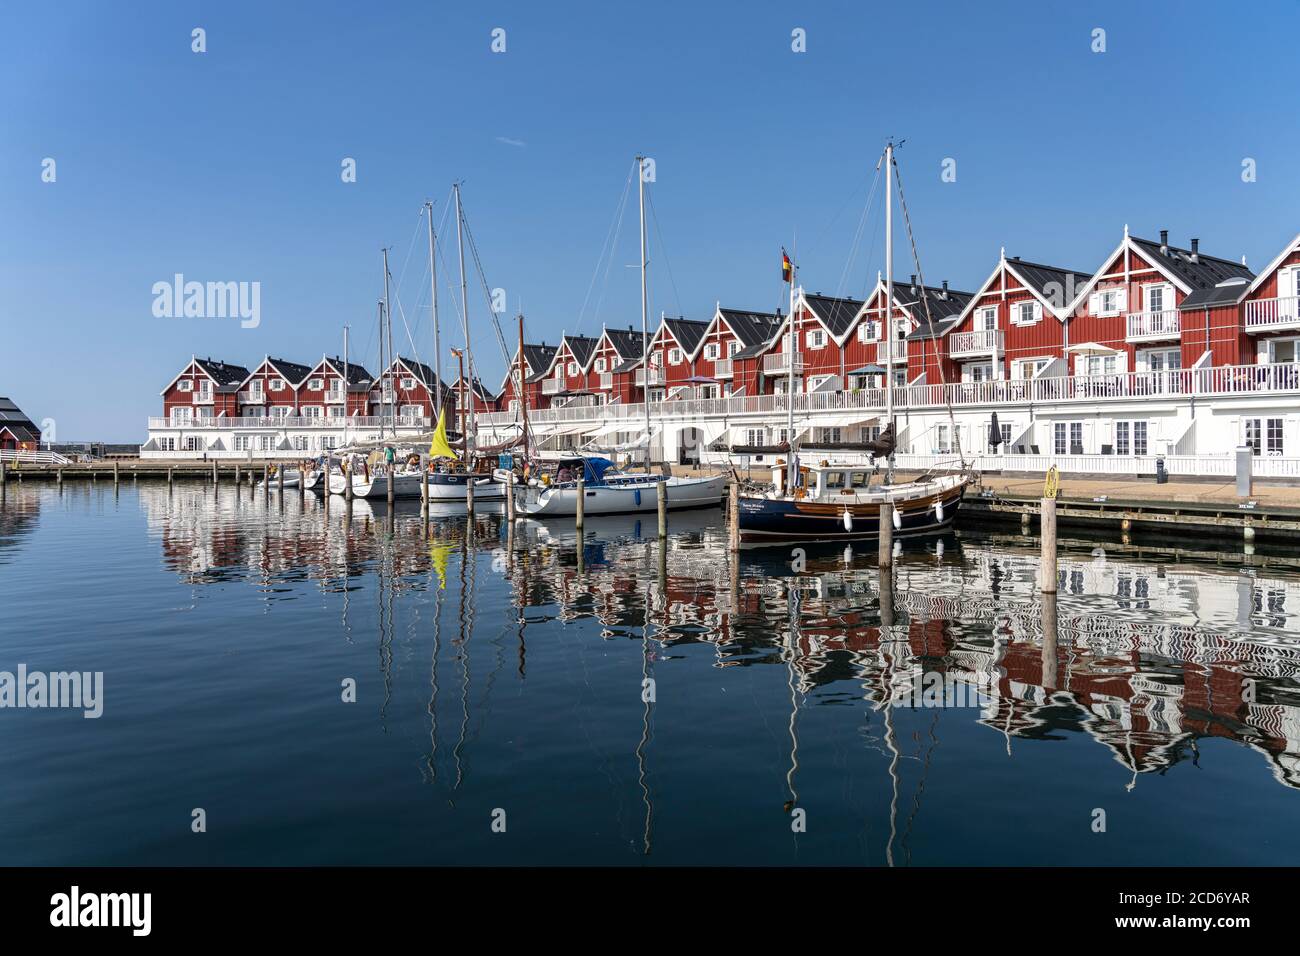 Hafen von Bagenkop, Insel Langeland, Dänemark, Europa | Bagenkop Marina, Langeland Island, Danemark, Europe Banque D'Images